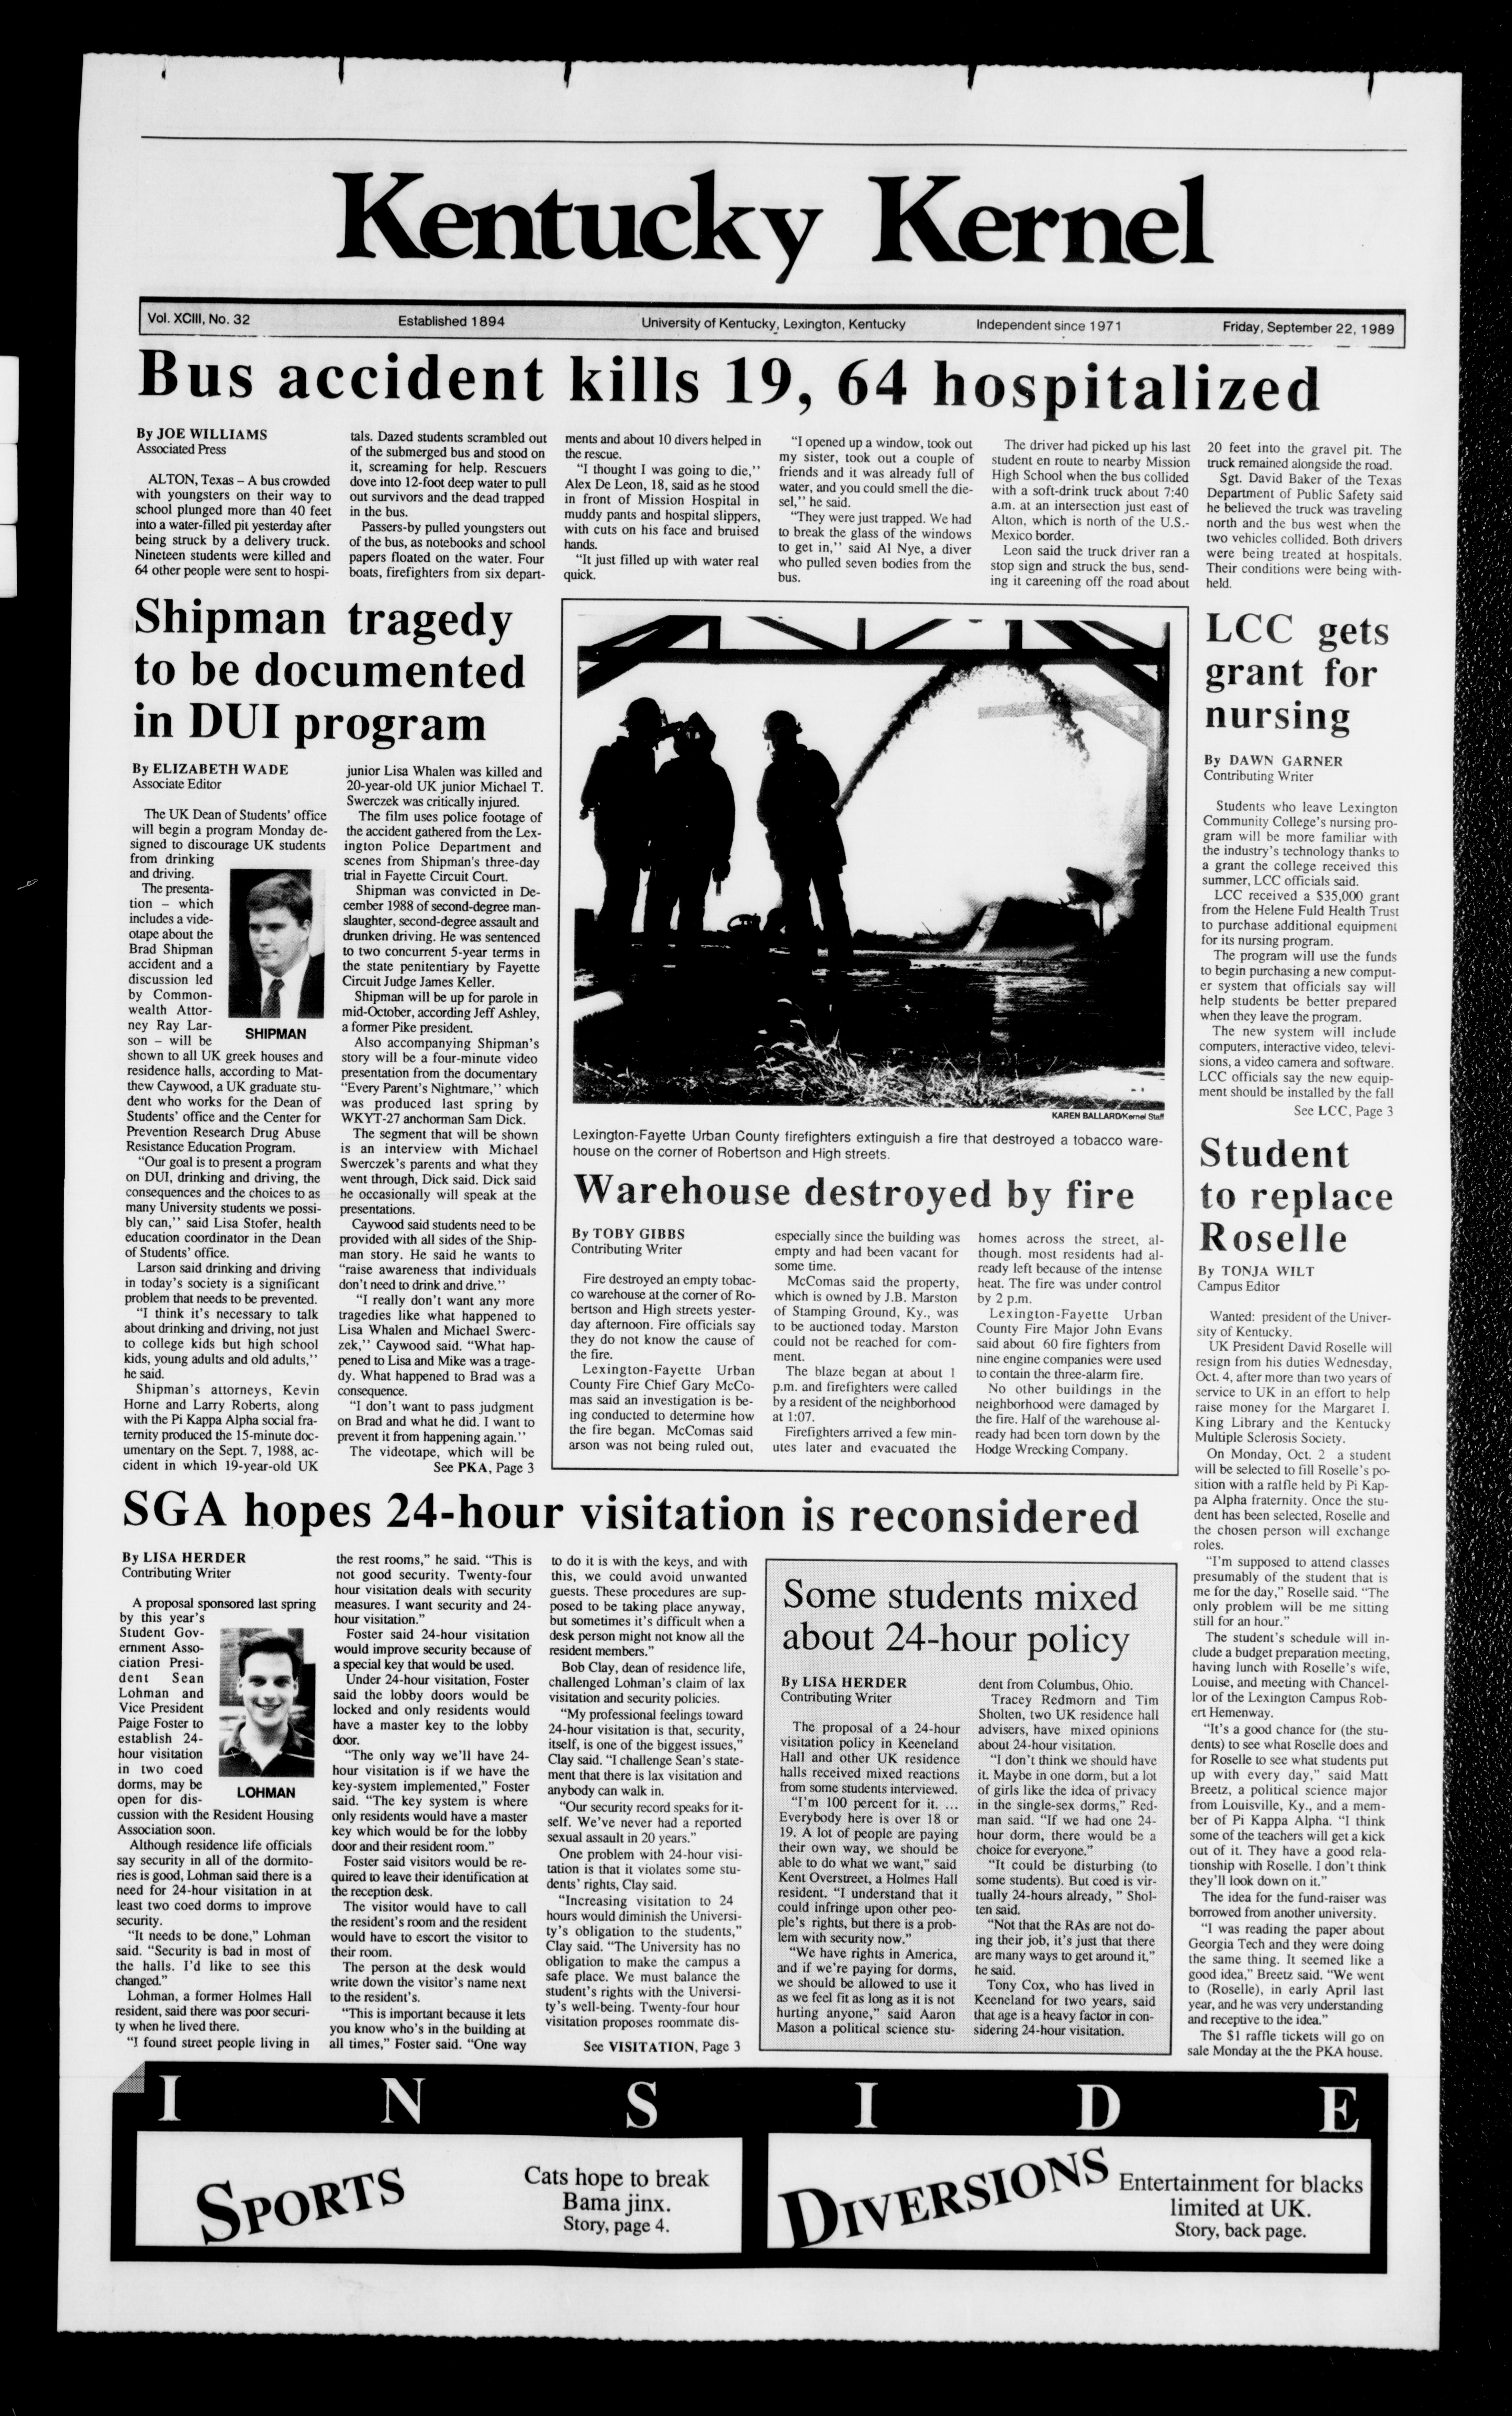 The Kentucky Kernel, September 22, 1989